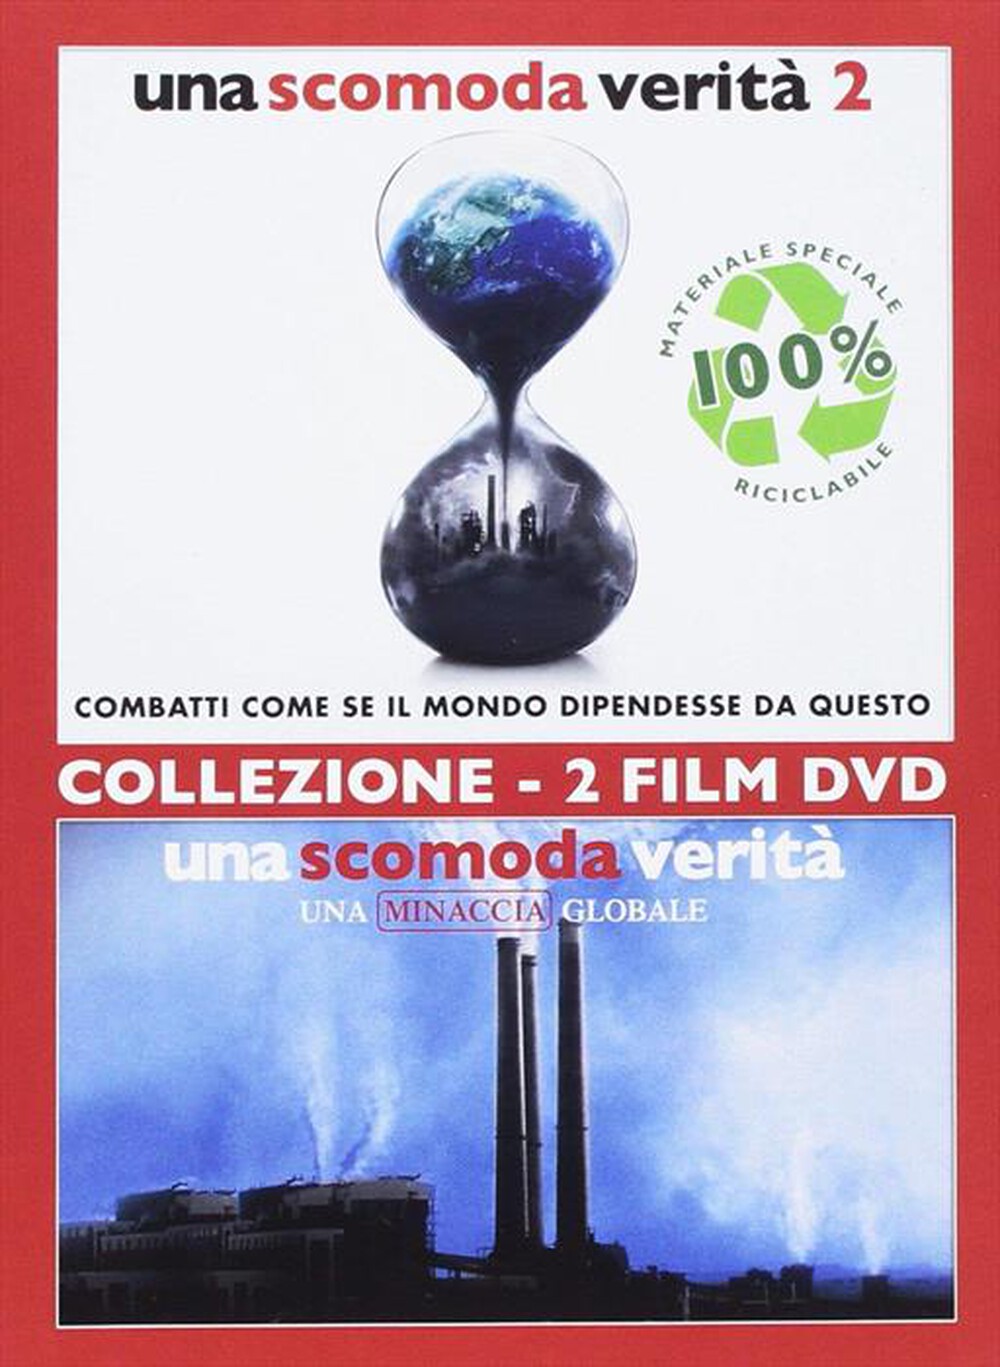 "PARAMOUNT PICTURE - Scomoda Verita' (Una) - Collezione 2 Film (2 Dvd)"